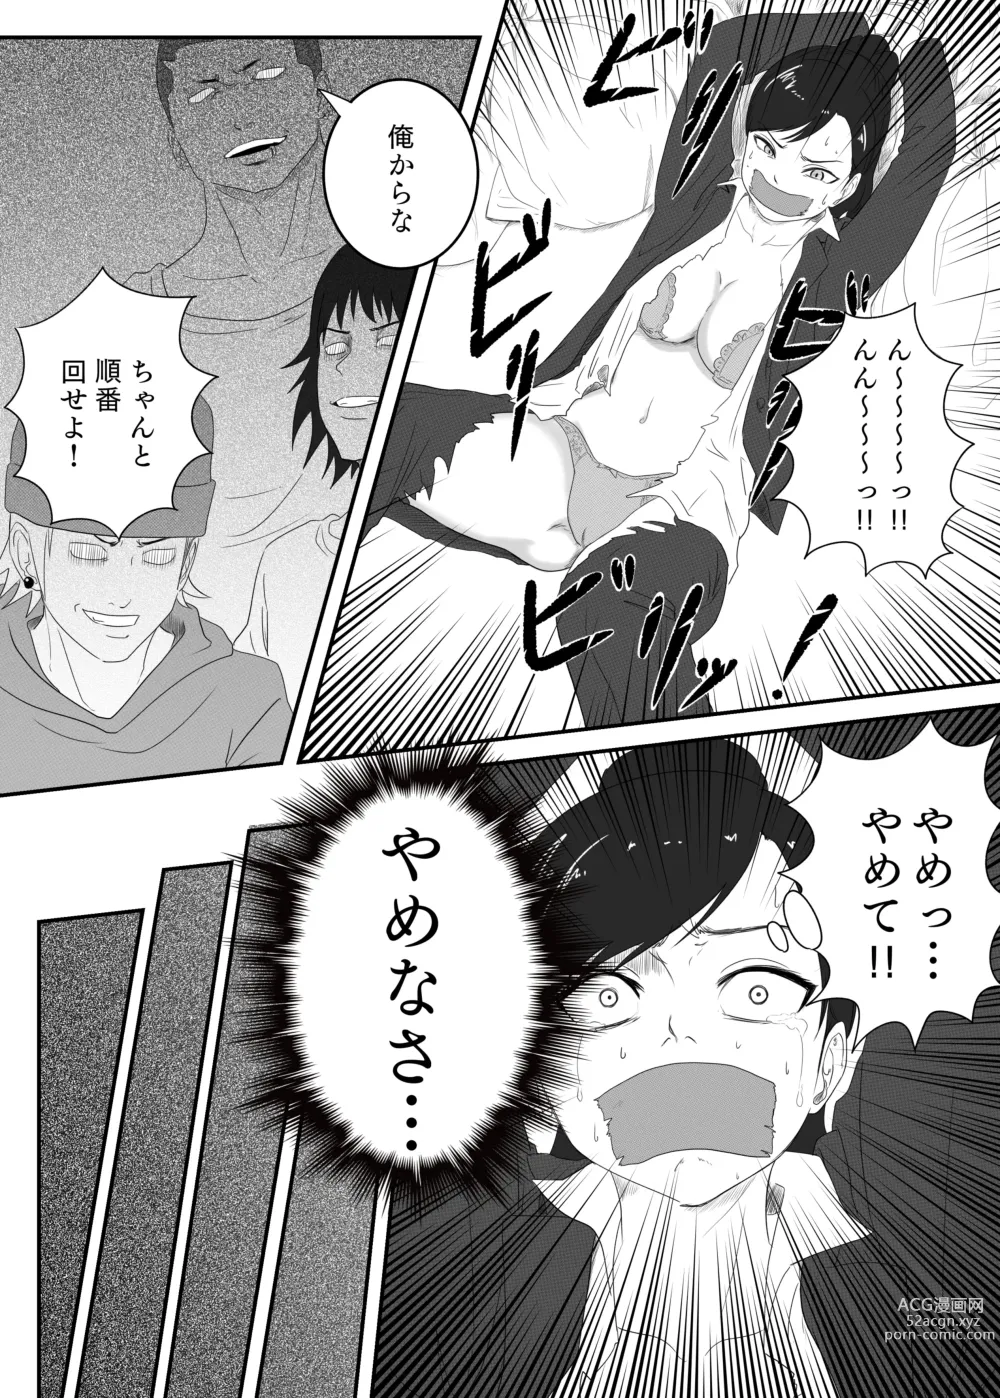 Page 7 of doujinshi Kuro no shinshoku～Black Venom～